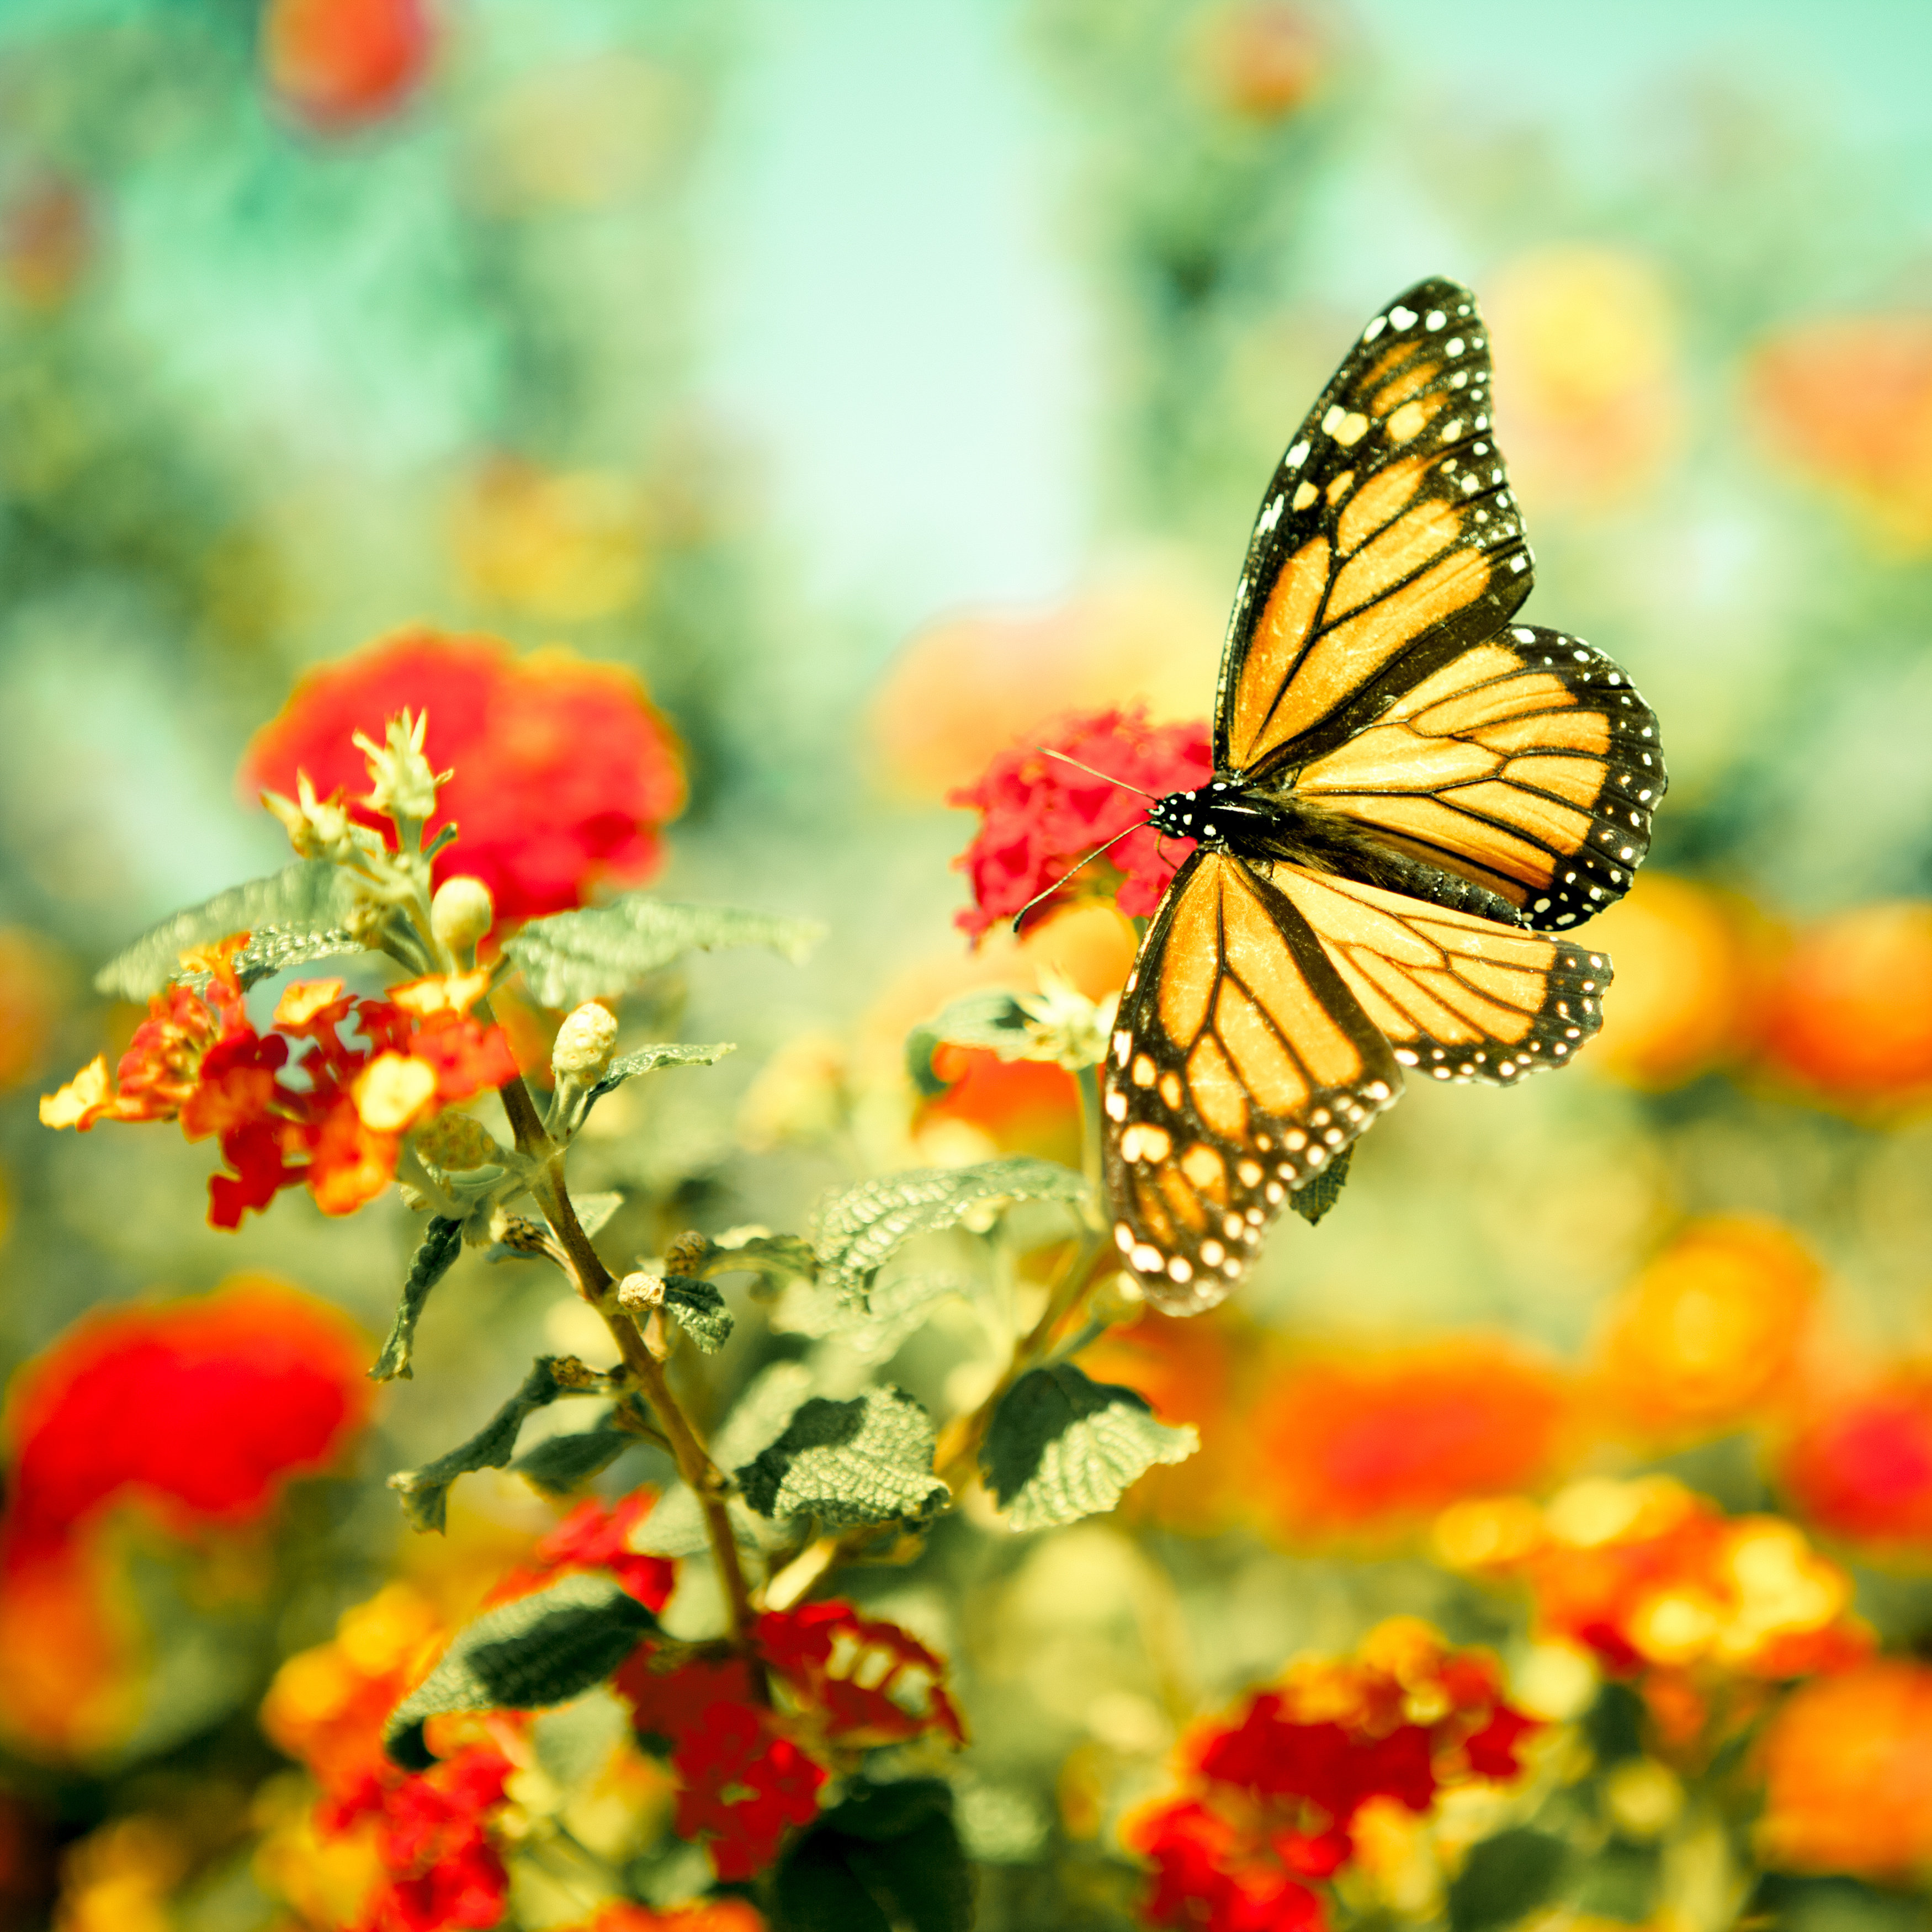 Monarch Wooden Butterfly Decor - Blackbrdstore